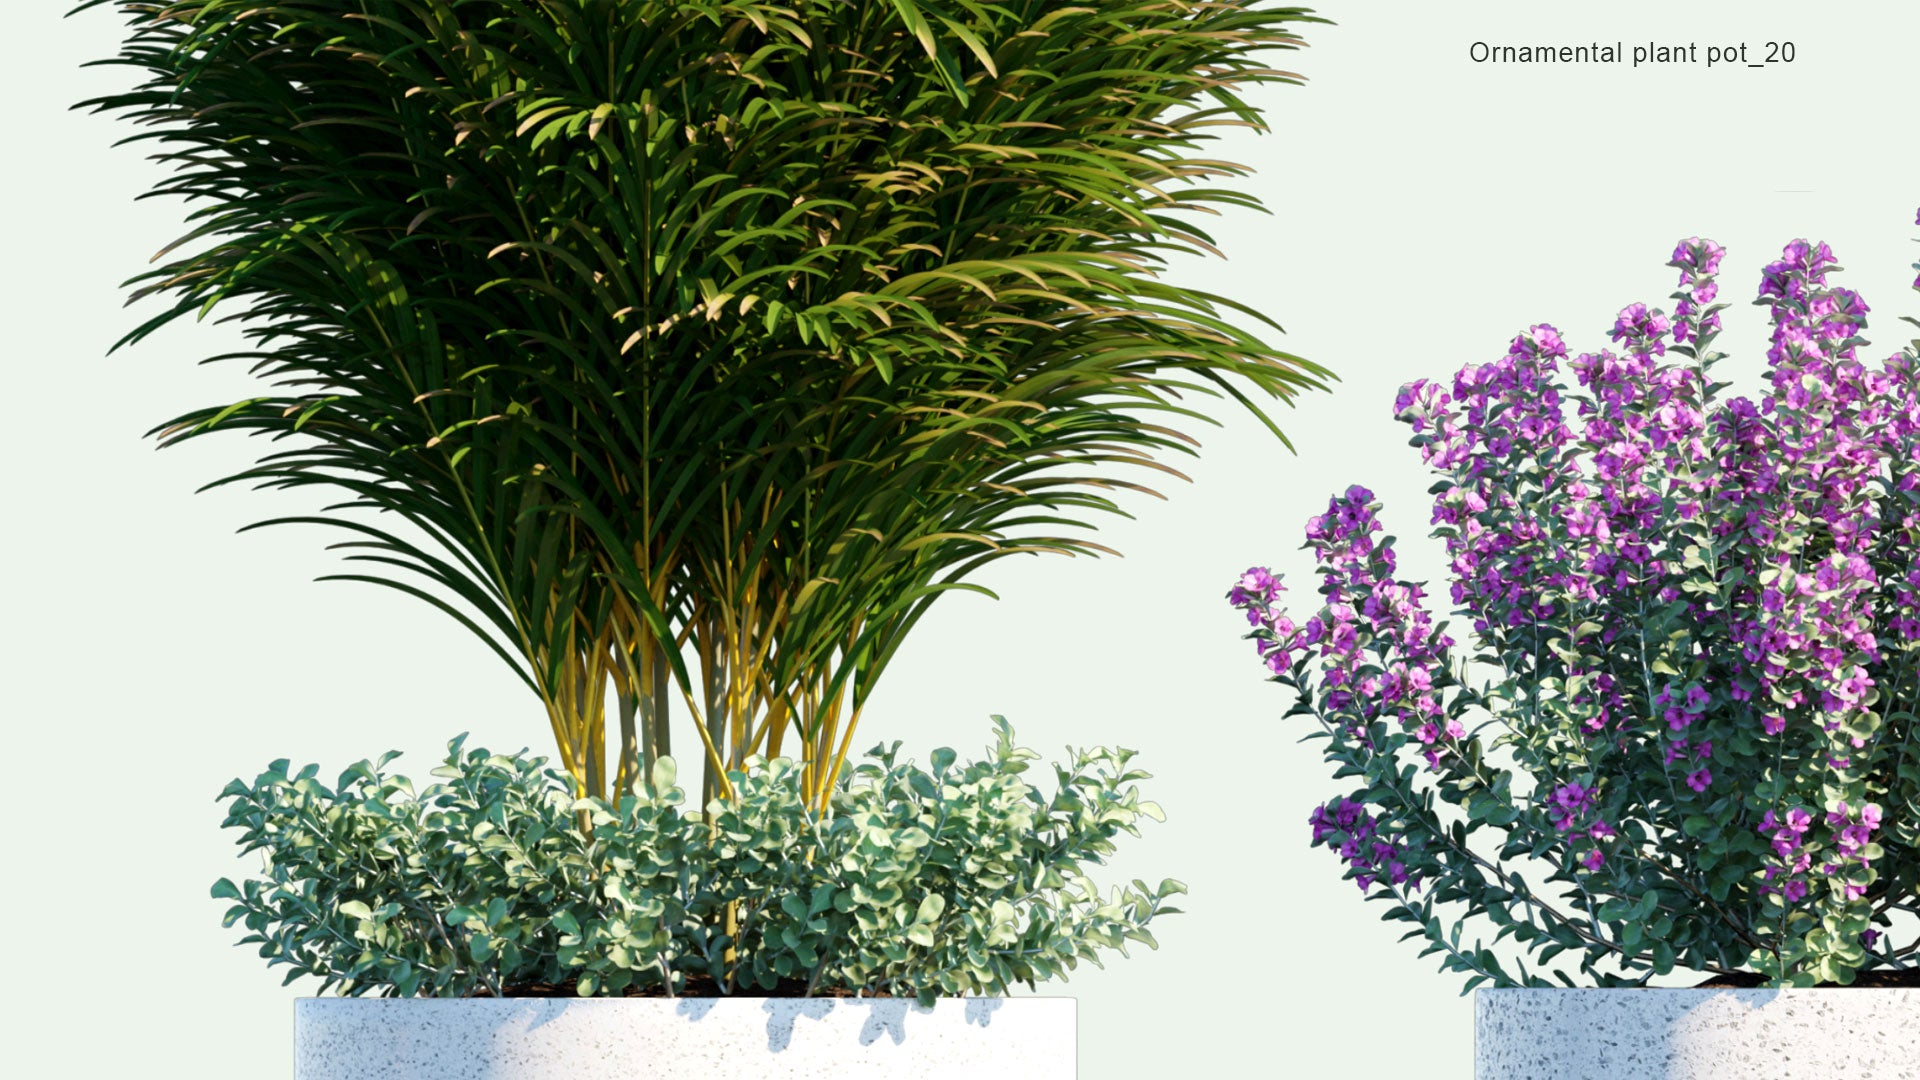 2D Ornamental Pot Plant 20 - Leucophyllum Frutescens, Dypsis Lutescens